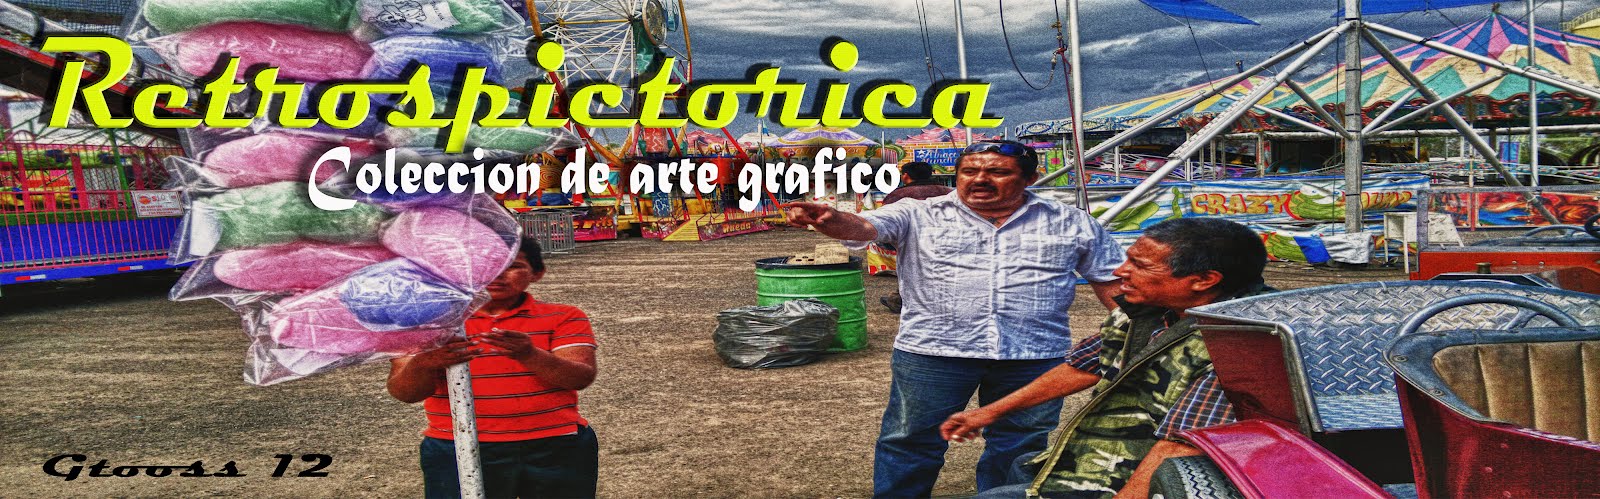 RETROSPICTORICA COLECCION DE ARTE GRAFICO